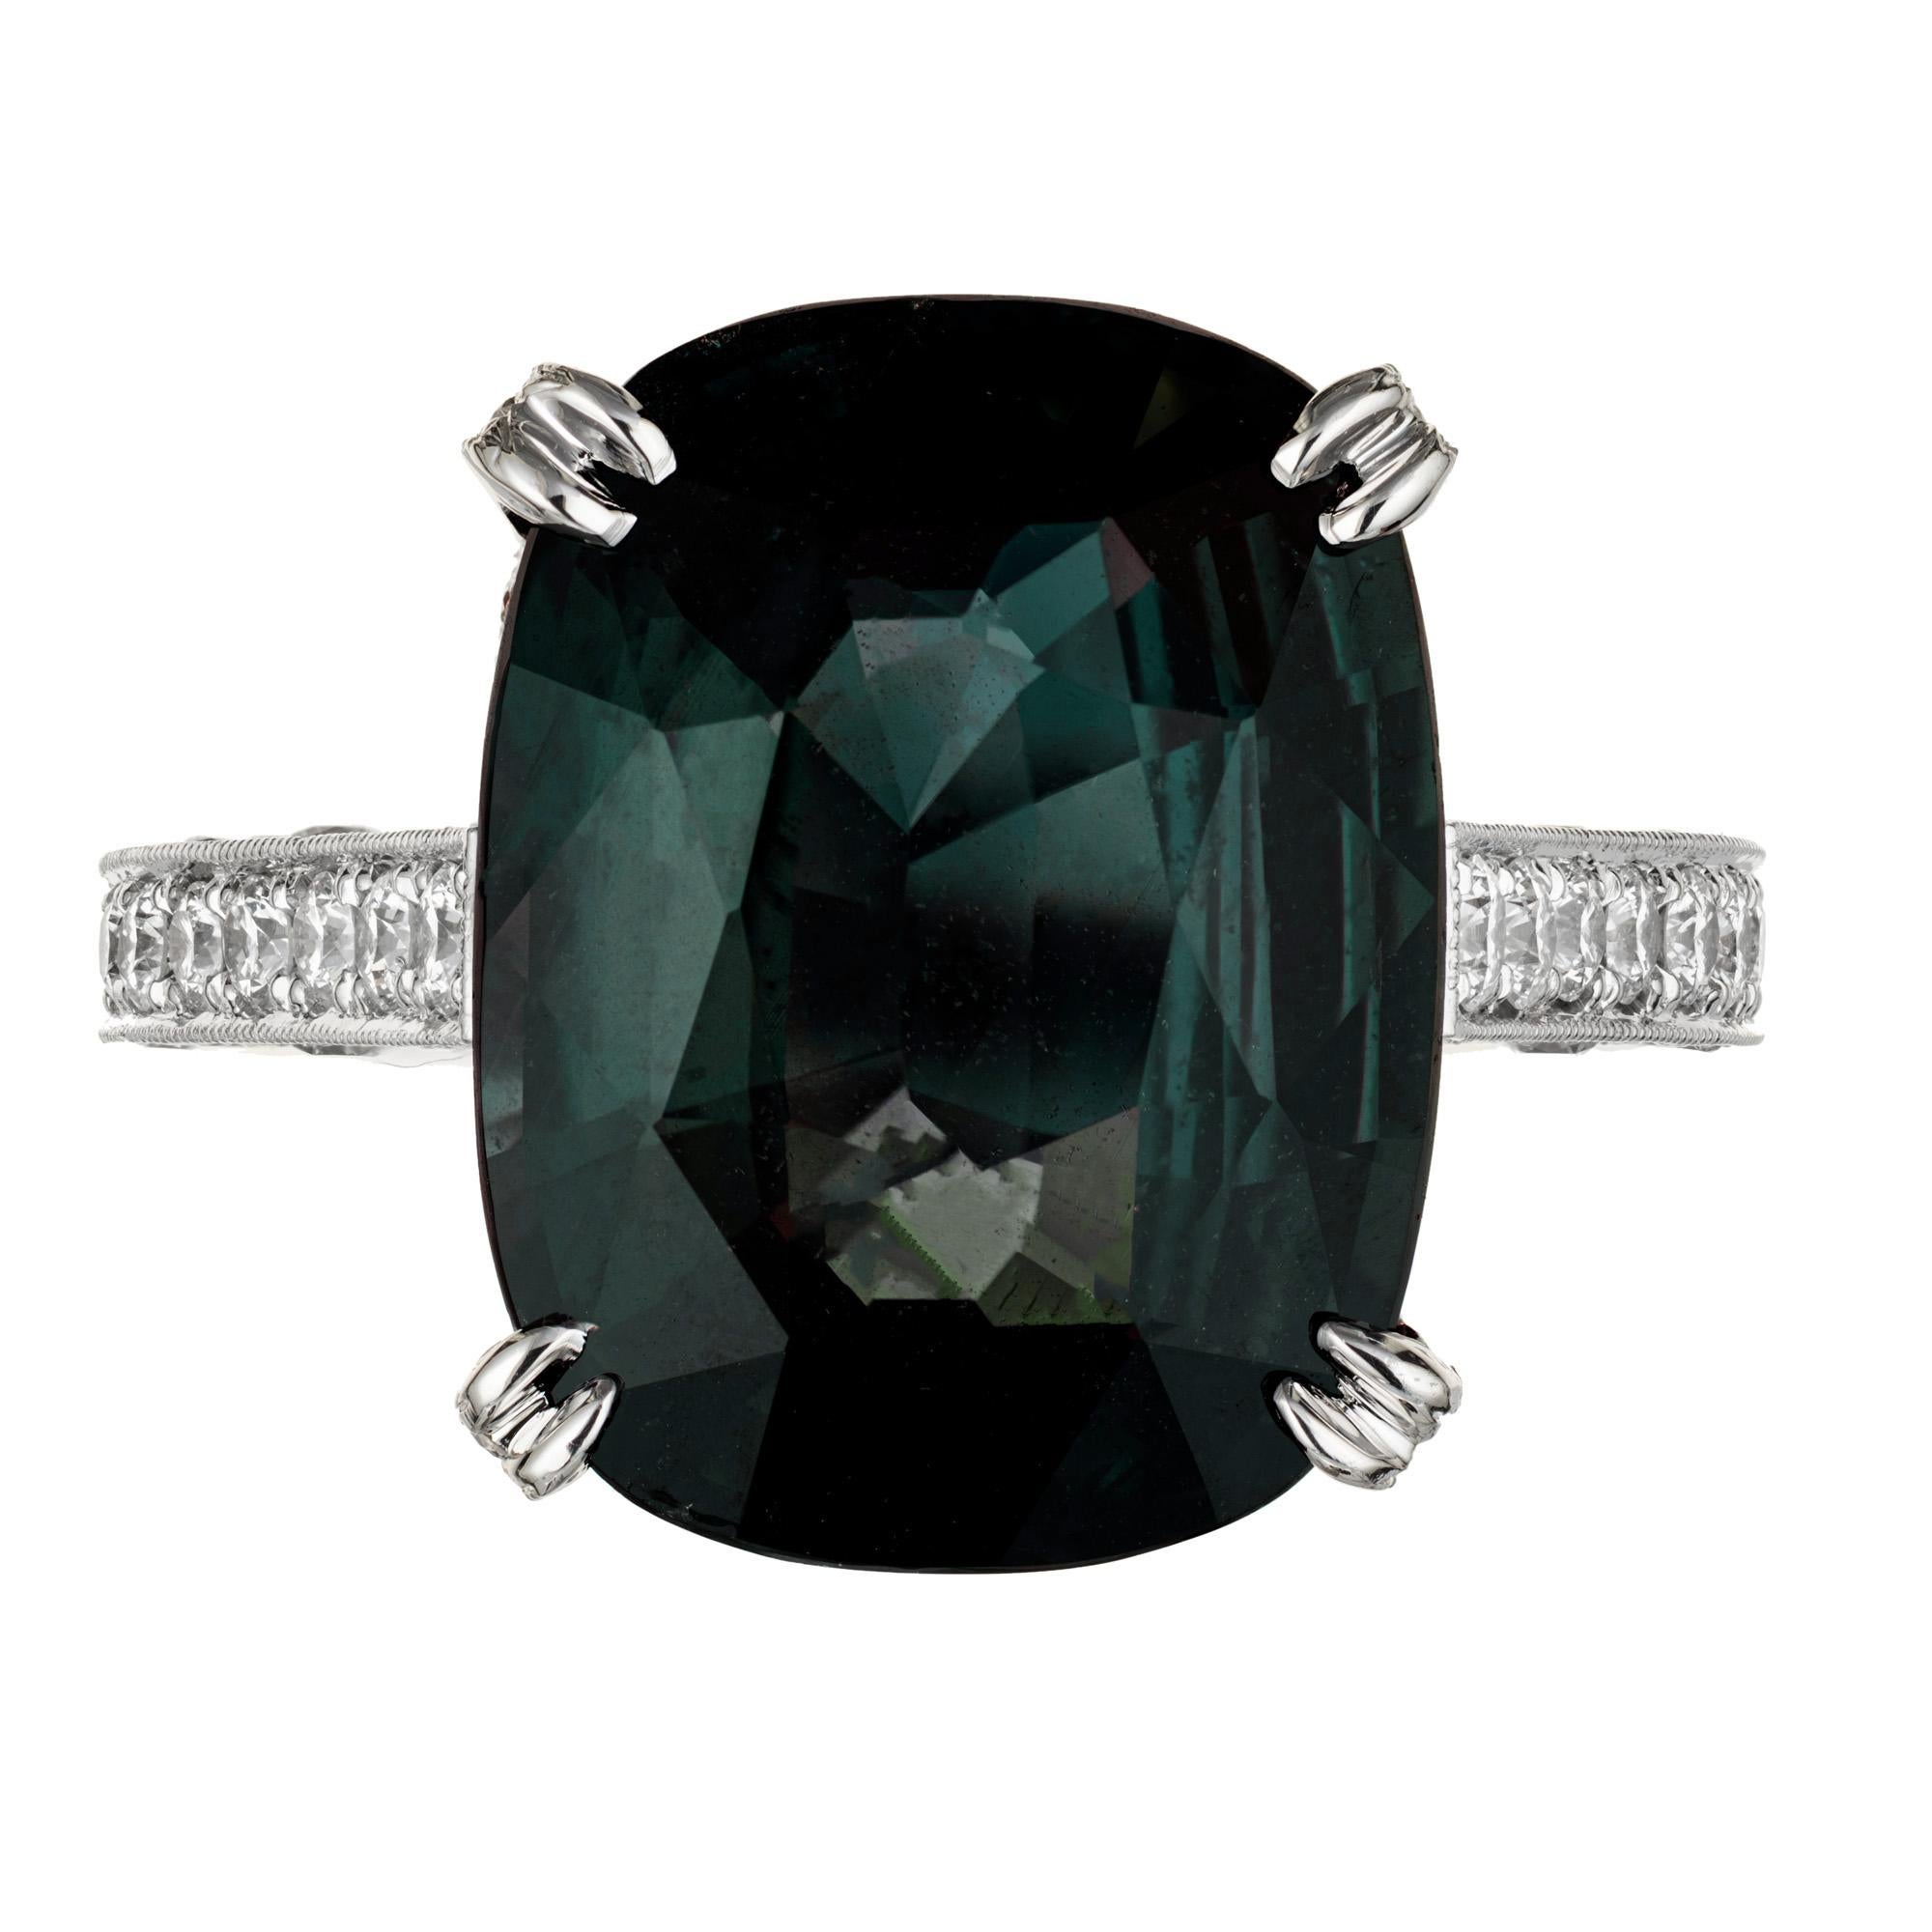 Saphir bleu vert naturel certifié GIA, taille coussin, dans une monture simple et élégante en platine avec micro pavé de diamants. Saphir central de 9,75 carats avec 148 diamants ronds de pleine taille. Créé dans l'atelier de Peter Suchy.